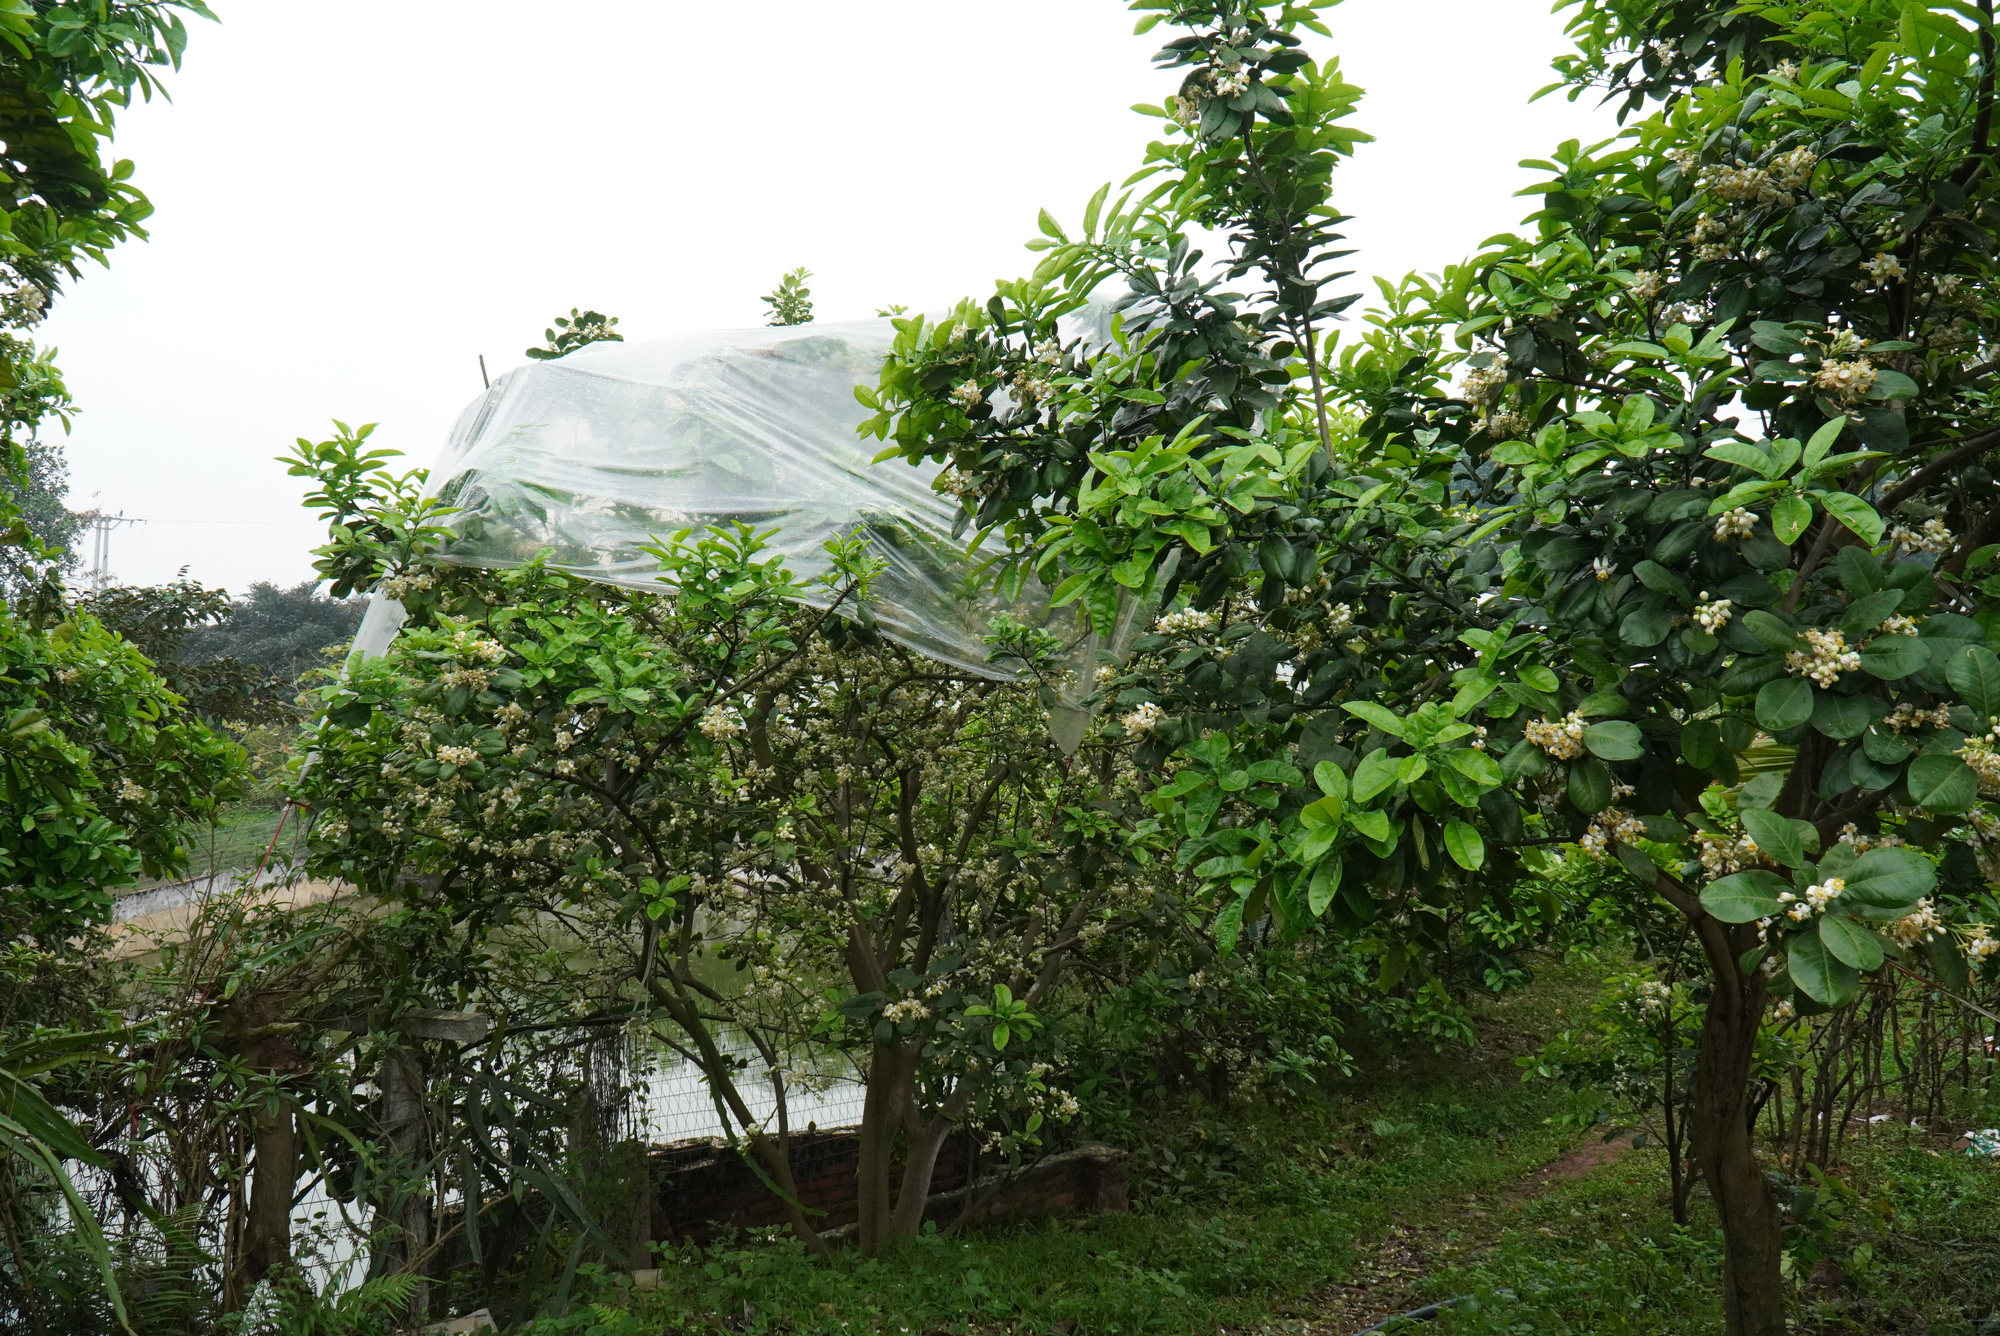 Nông dân Bắc Giang tiết lộ lý do giăng ni lông cho vườn bưởi chớm nở hoa thơm ngát - Ảnh 1.